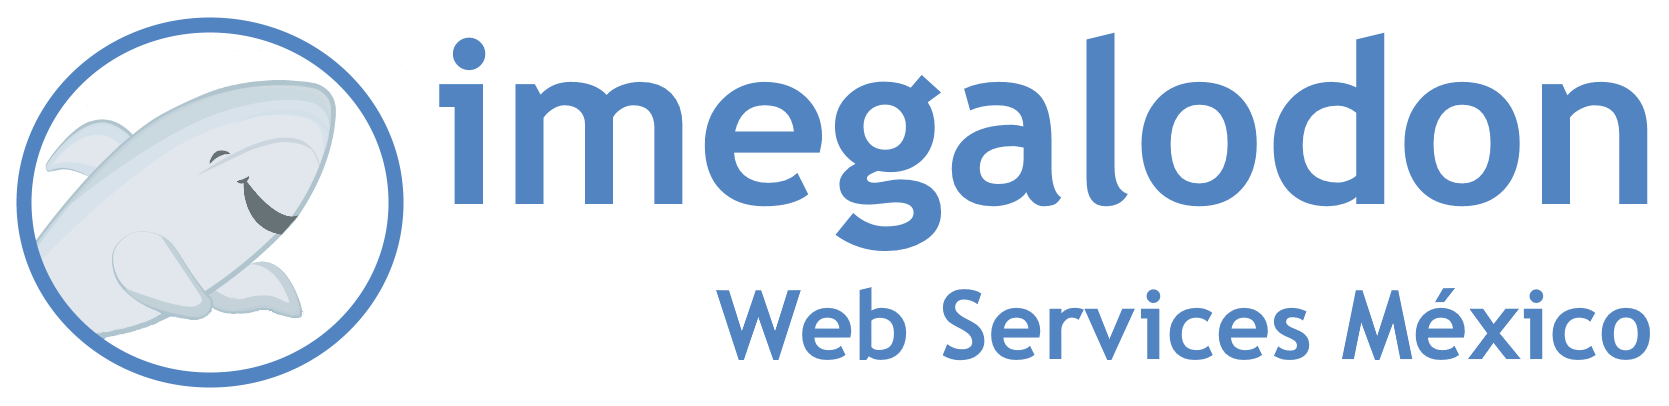 imegalodon Web Service México